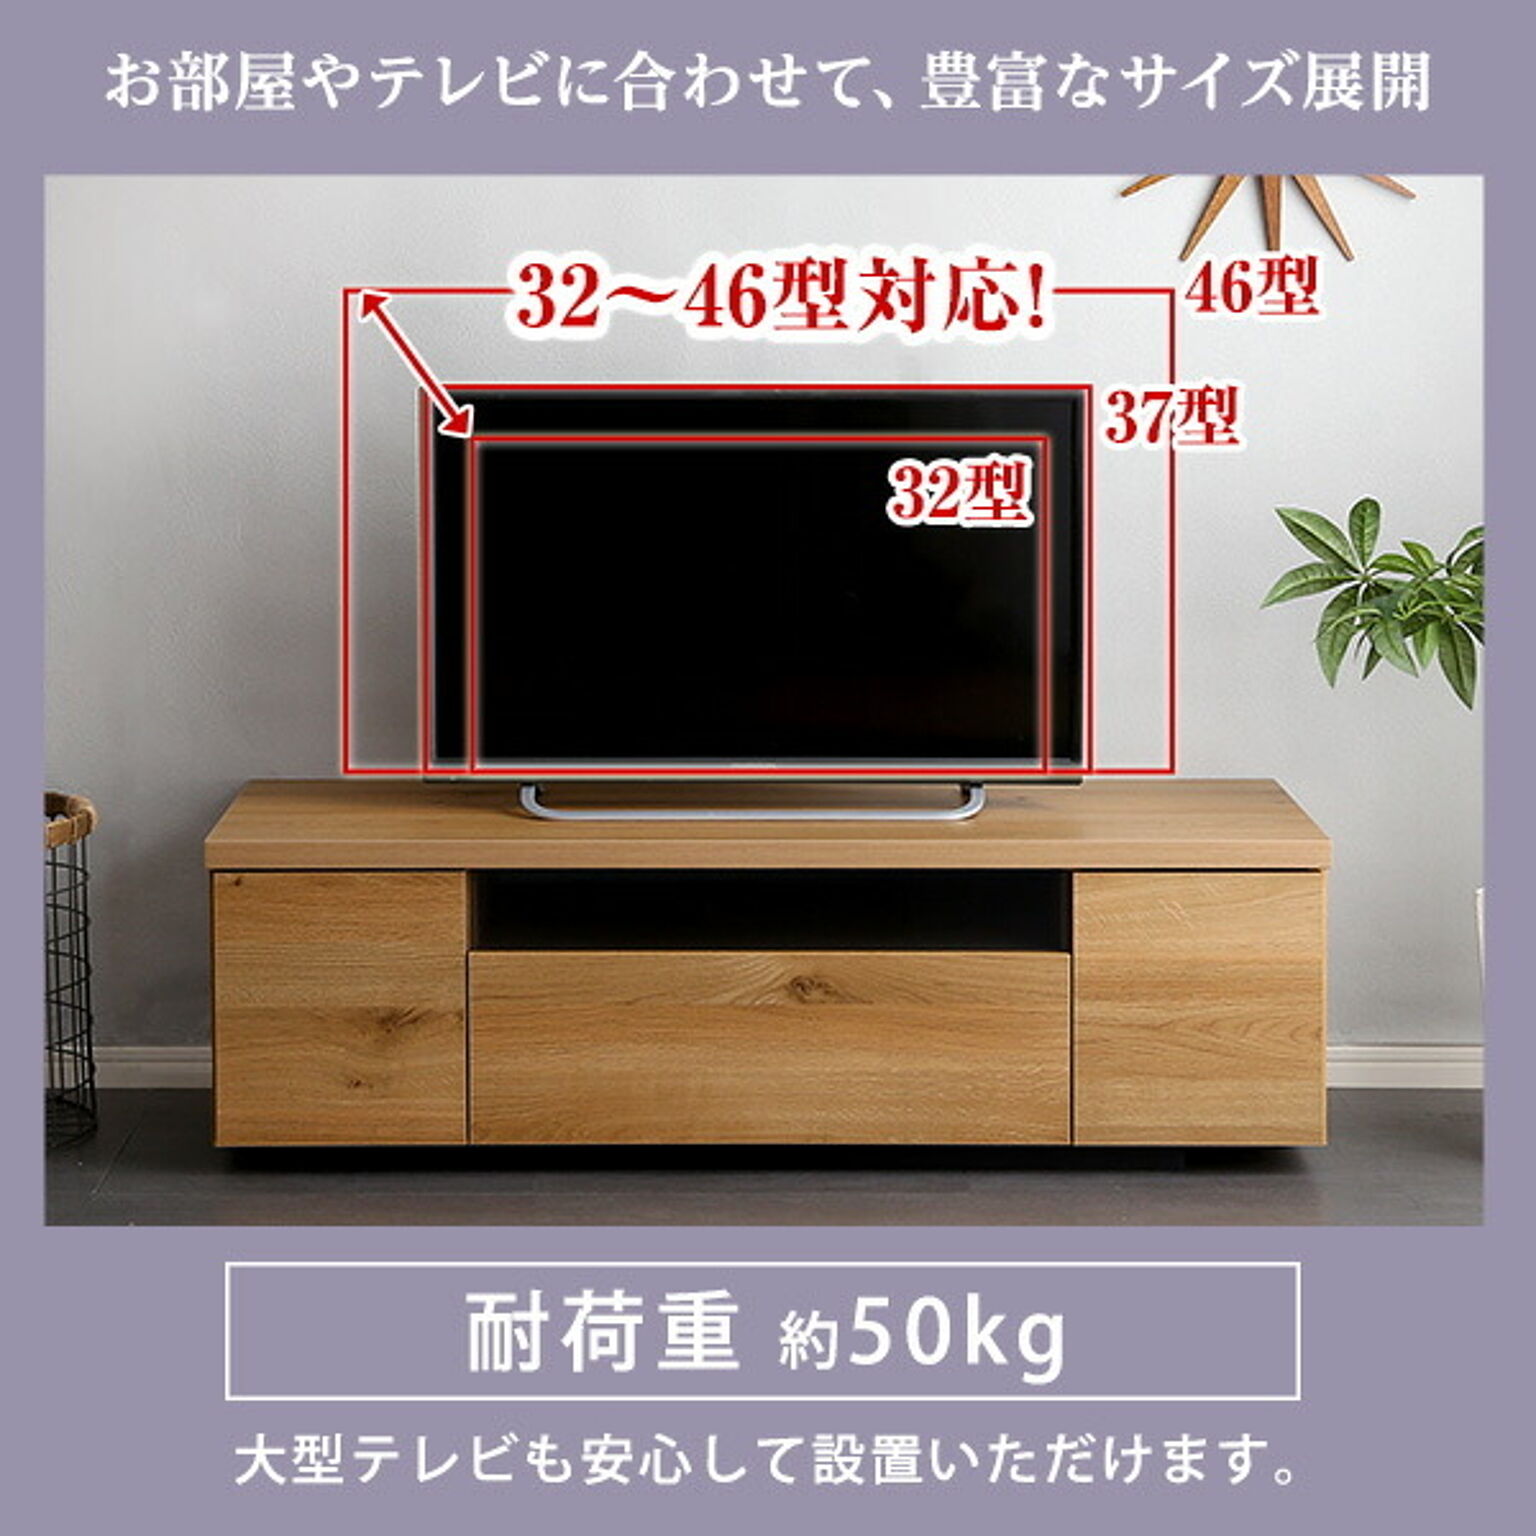 【送料無料】 ソロン 幅150 TVボード ローボード テレビボード テレビ台 格子 木製 SOLONLBR ウォールナット突板 プッシュ